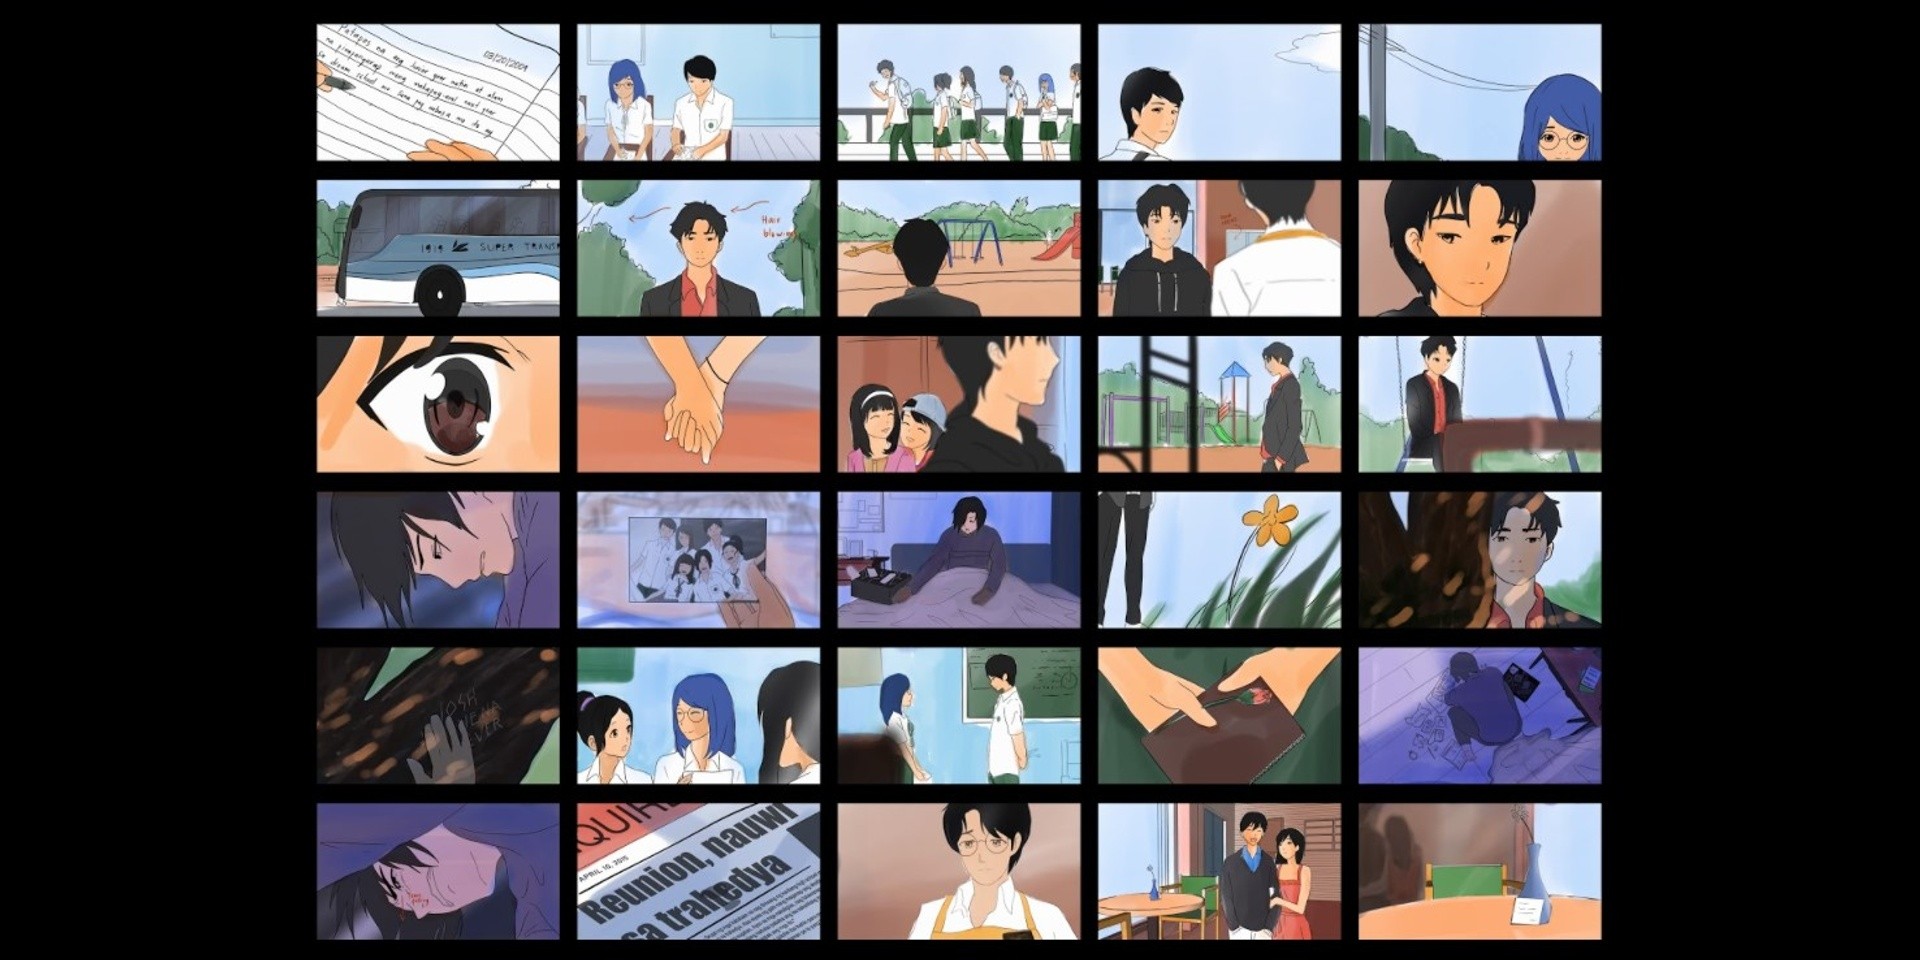 Behind the Lens: JujuArts on creating and animating SB19's 'Hanggang Sa Huli' music video